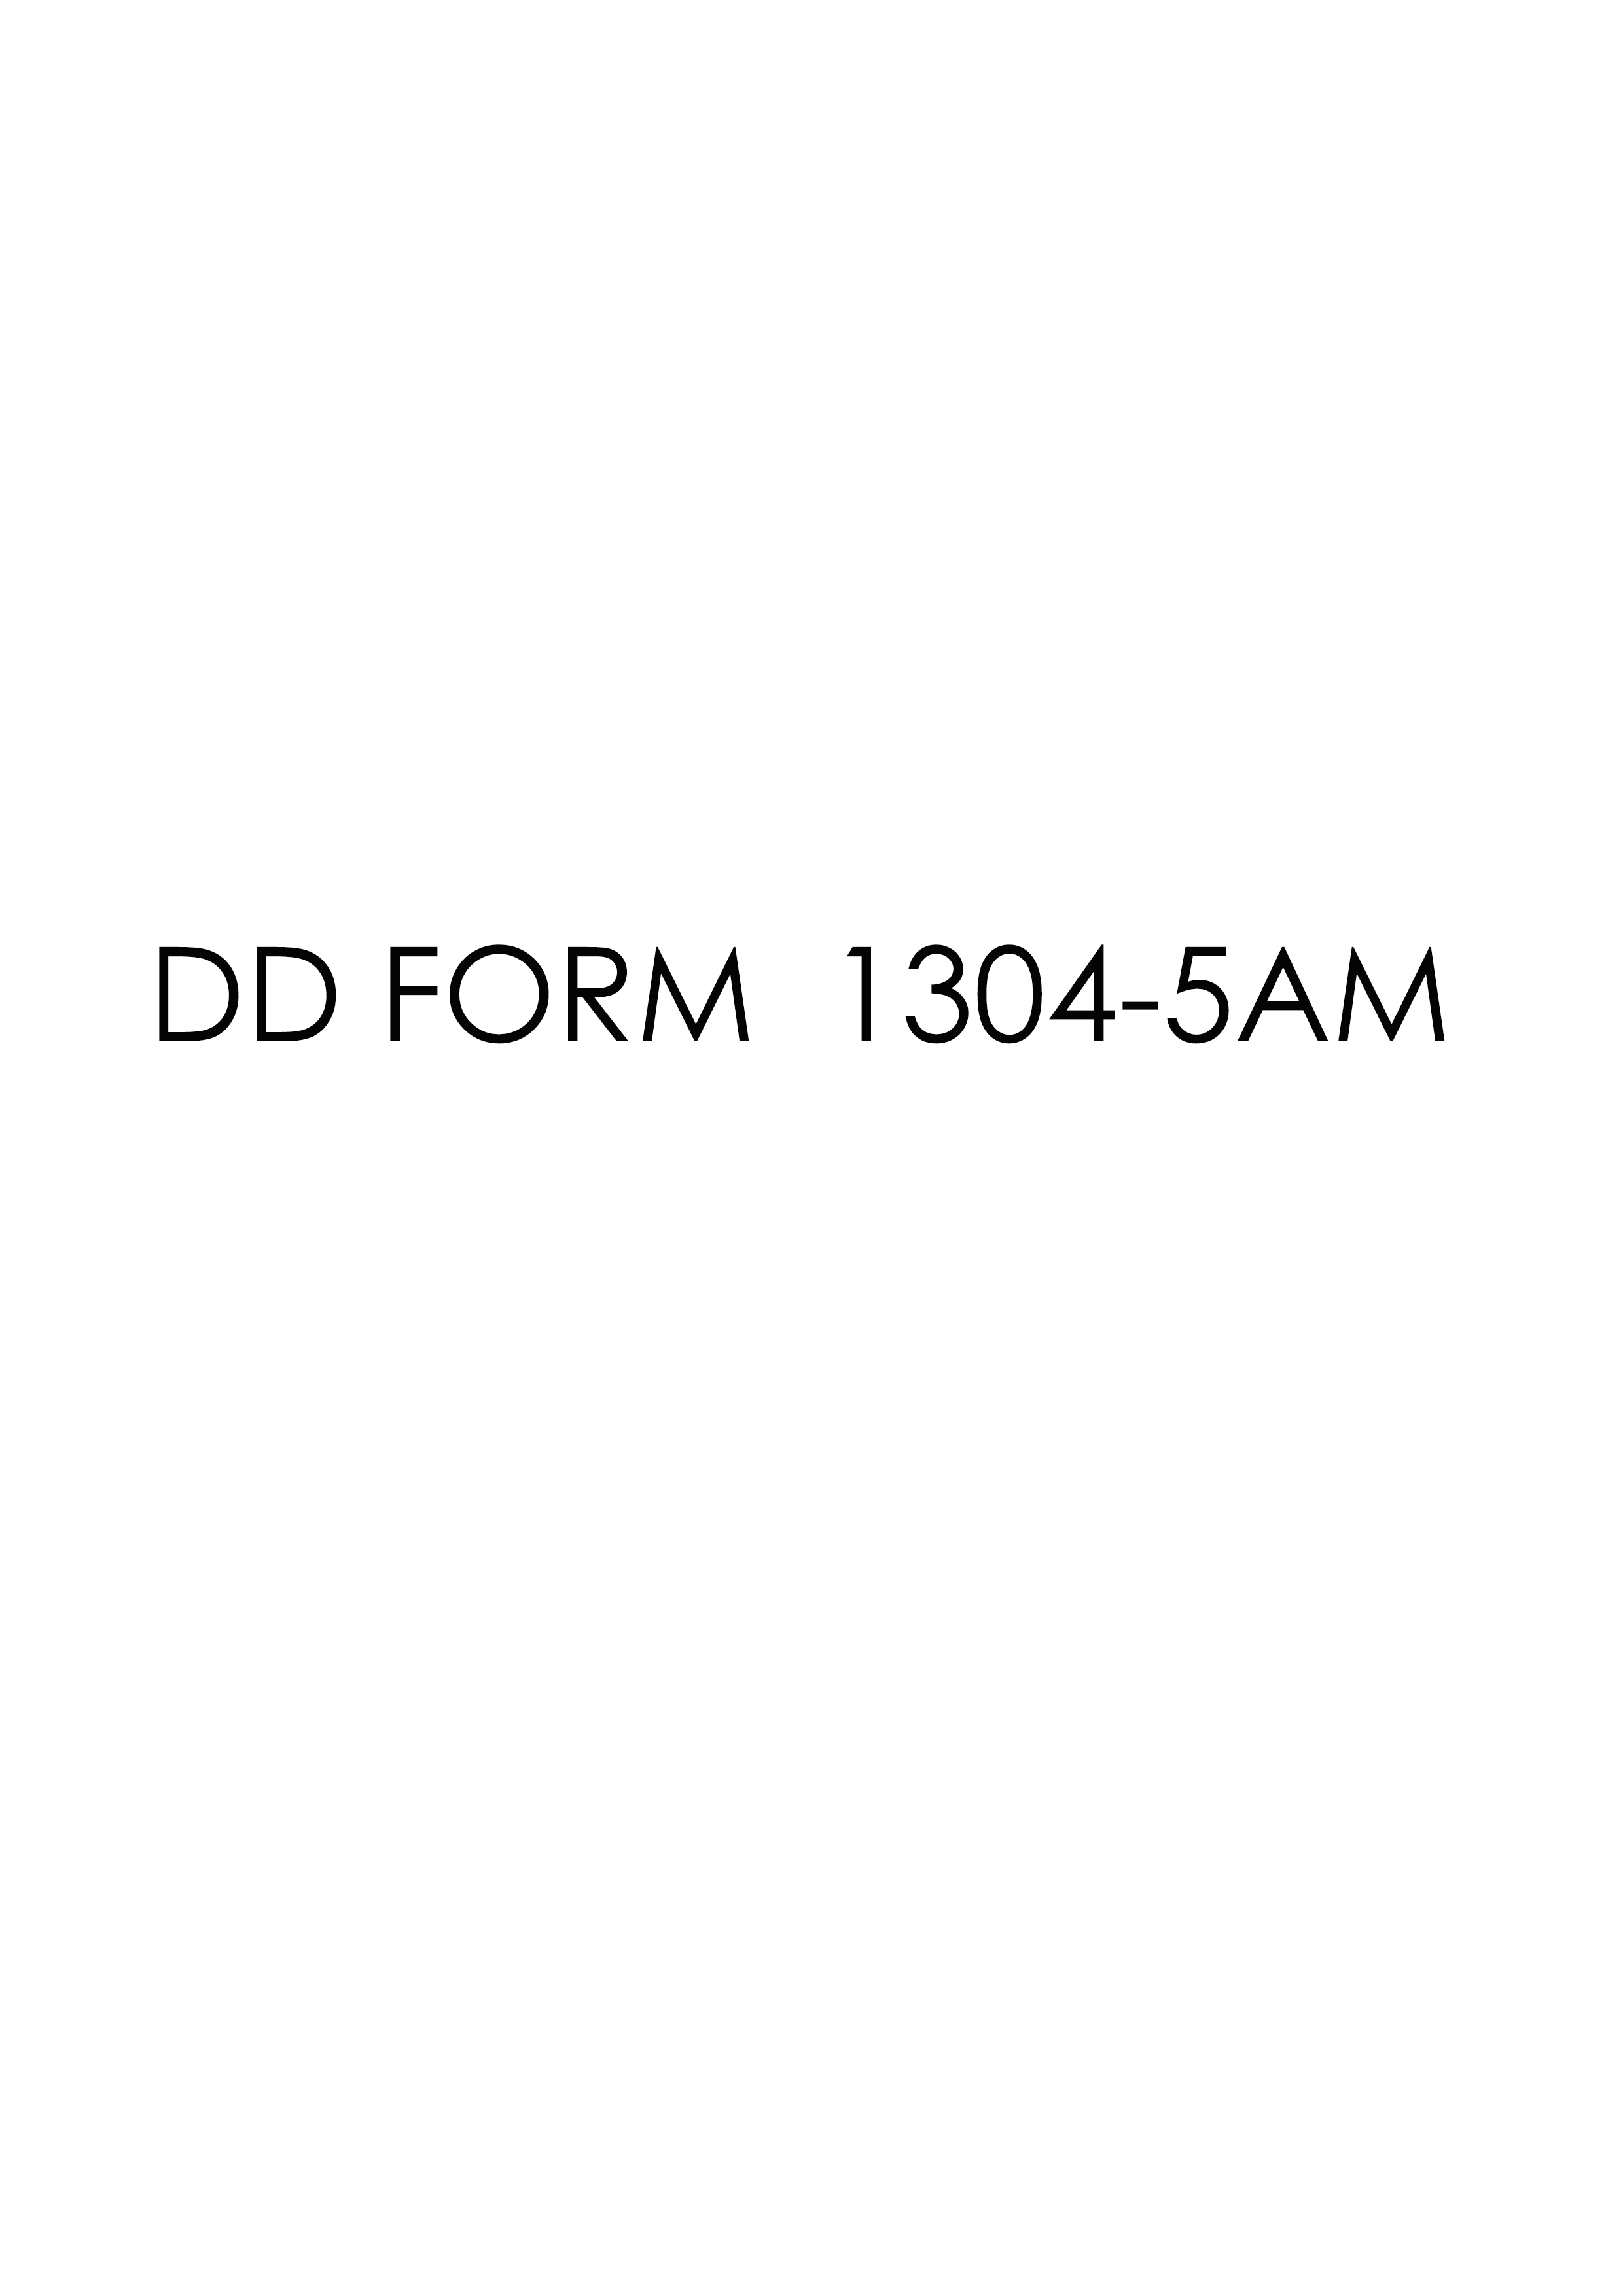 Download dd Form 1304-5AM